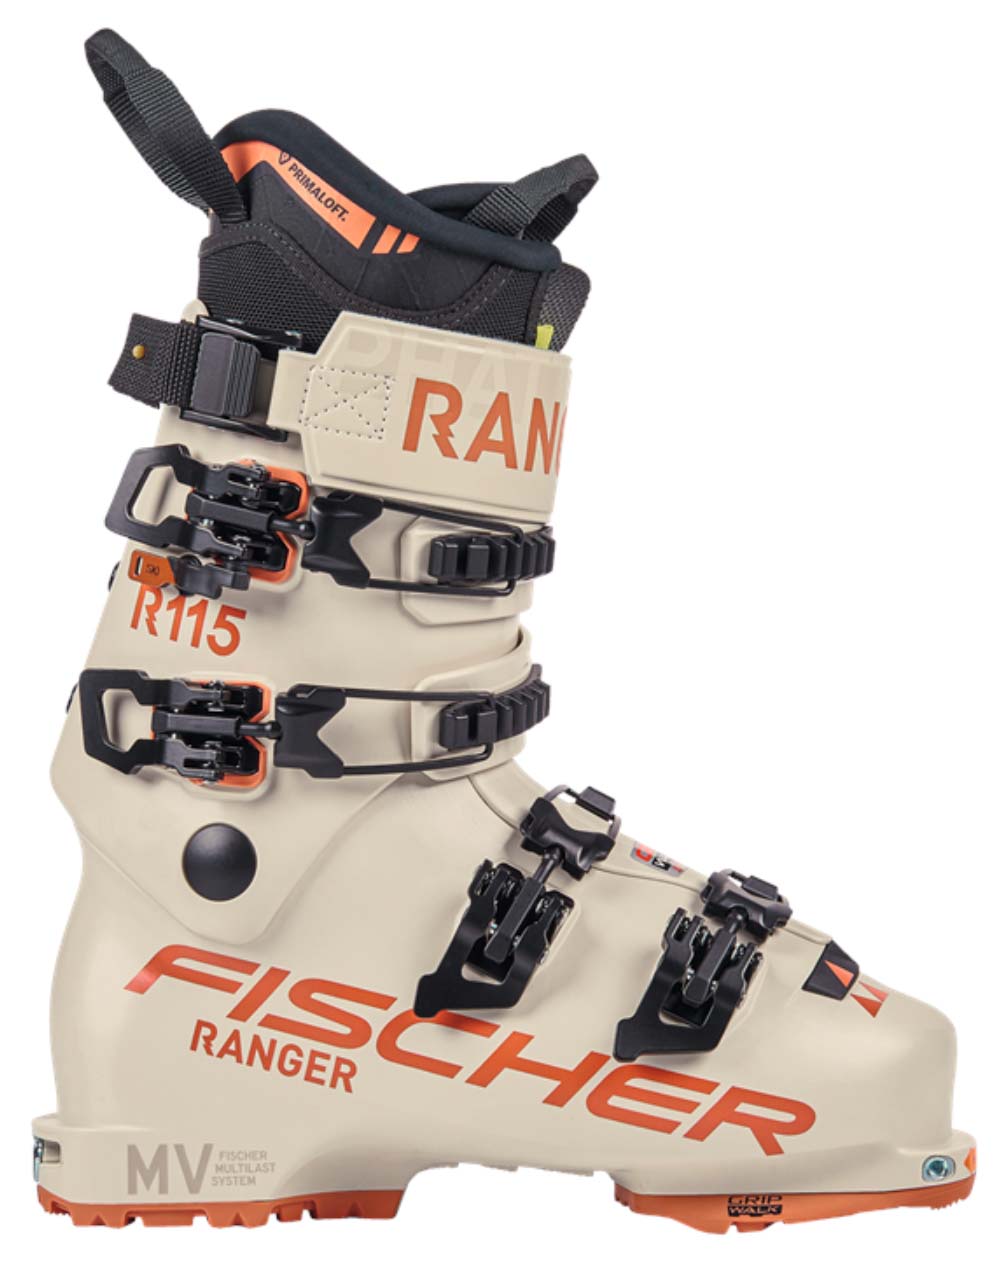 Fischer Ranger 115 GW DYN women's ski boot